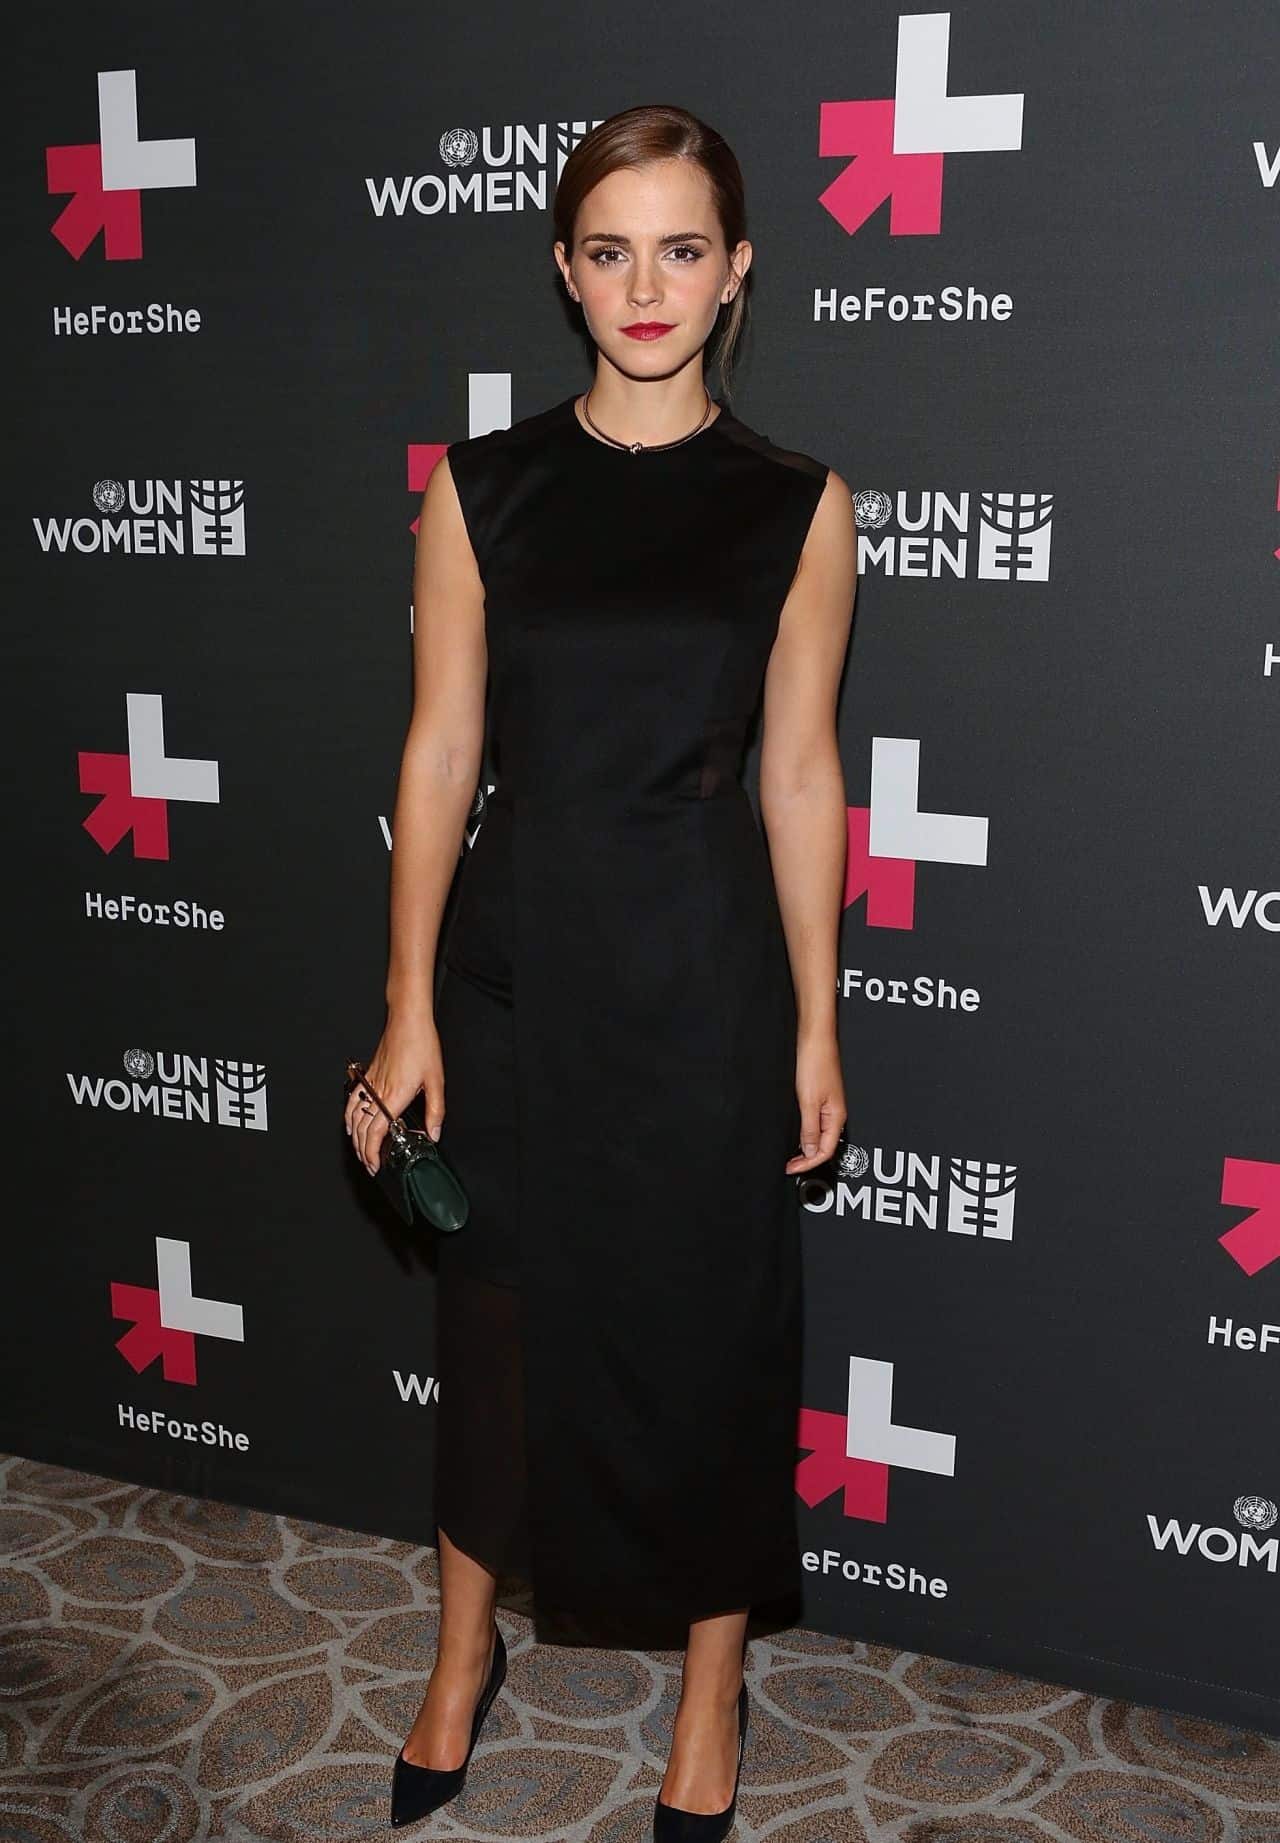 Emma Watson Attended UN Women's "HeForShe" Afterparty in a Sheer Dress